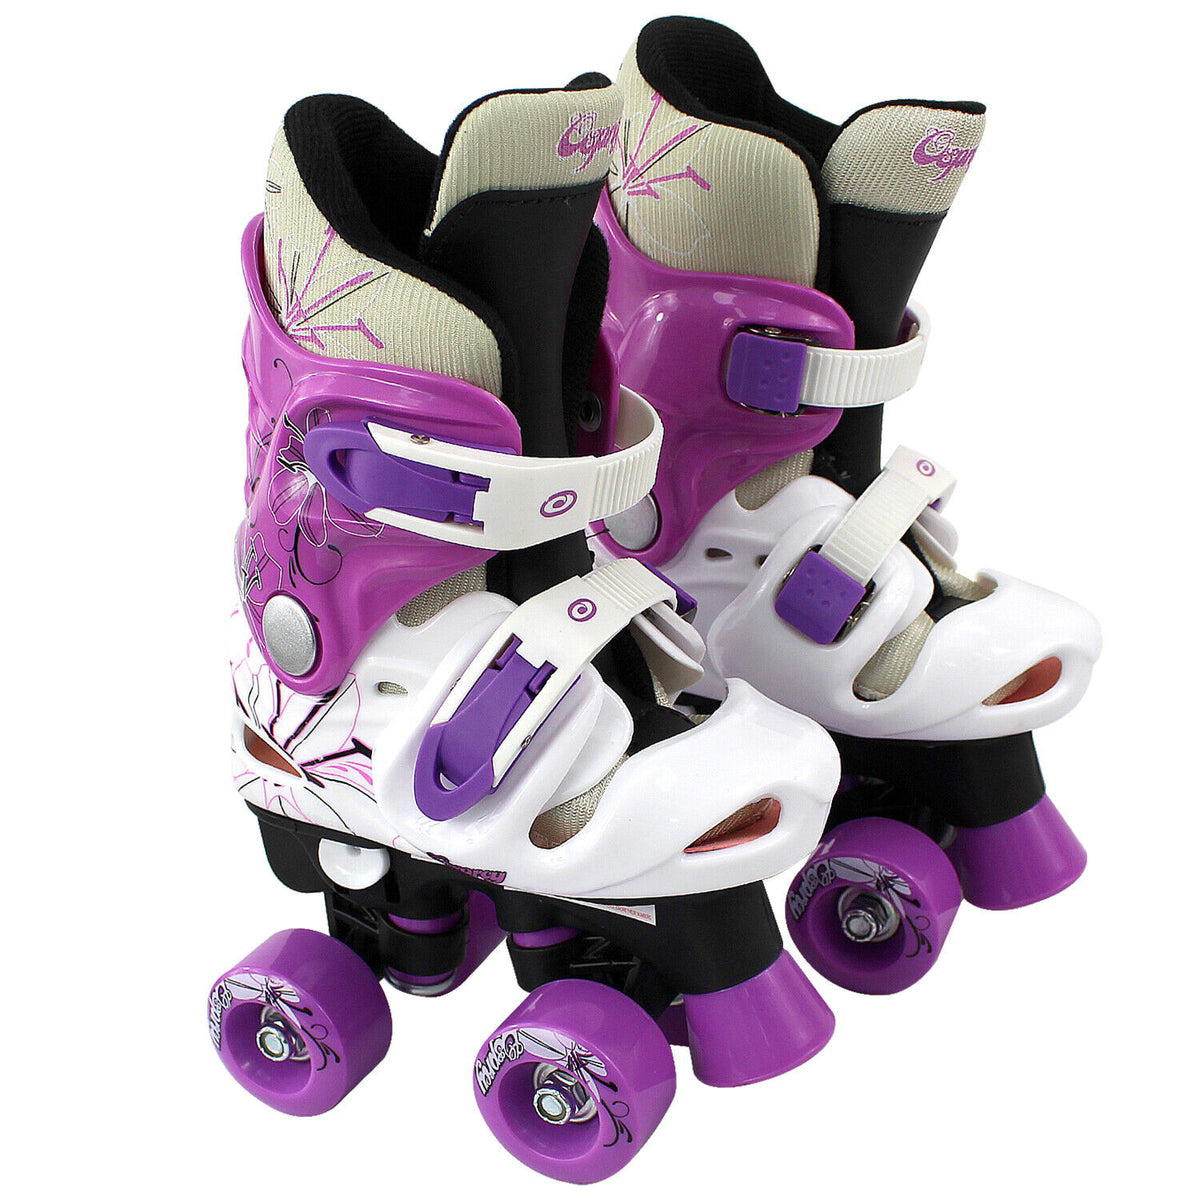 Wheels Kids Roller Skates Boot